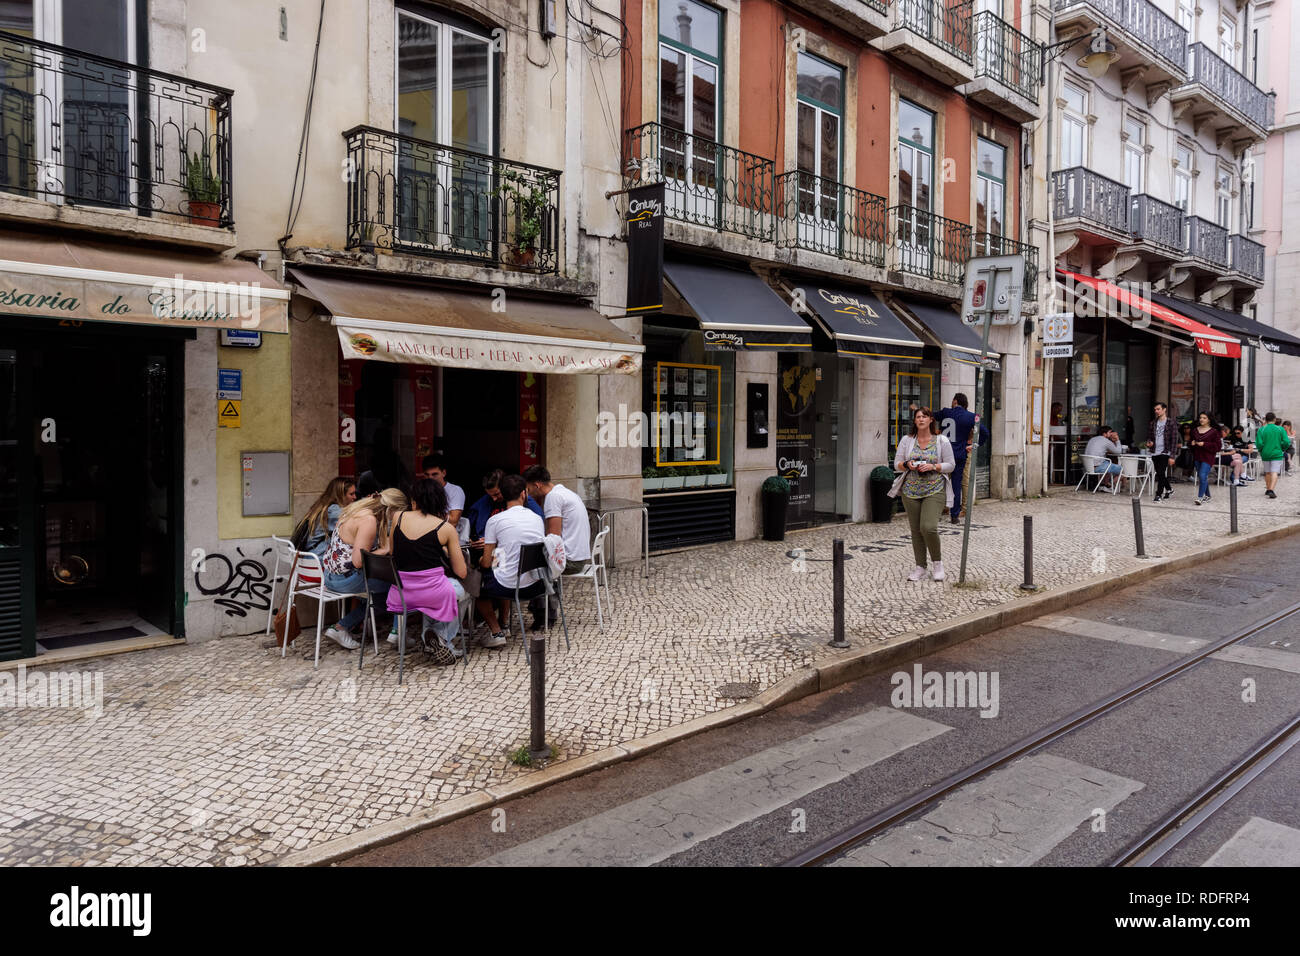 Commerces et restaurants dans le quartier de Bairro Alto, Lisbonne, Portugal Banque D'Images